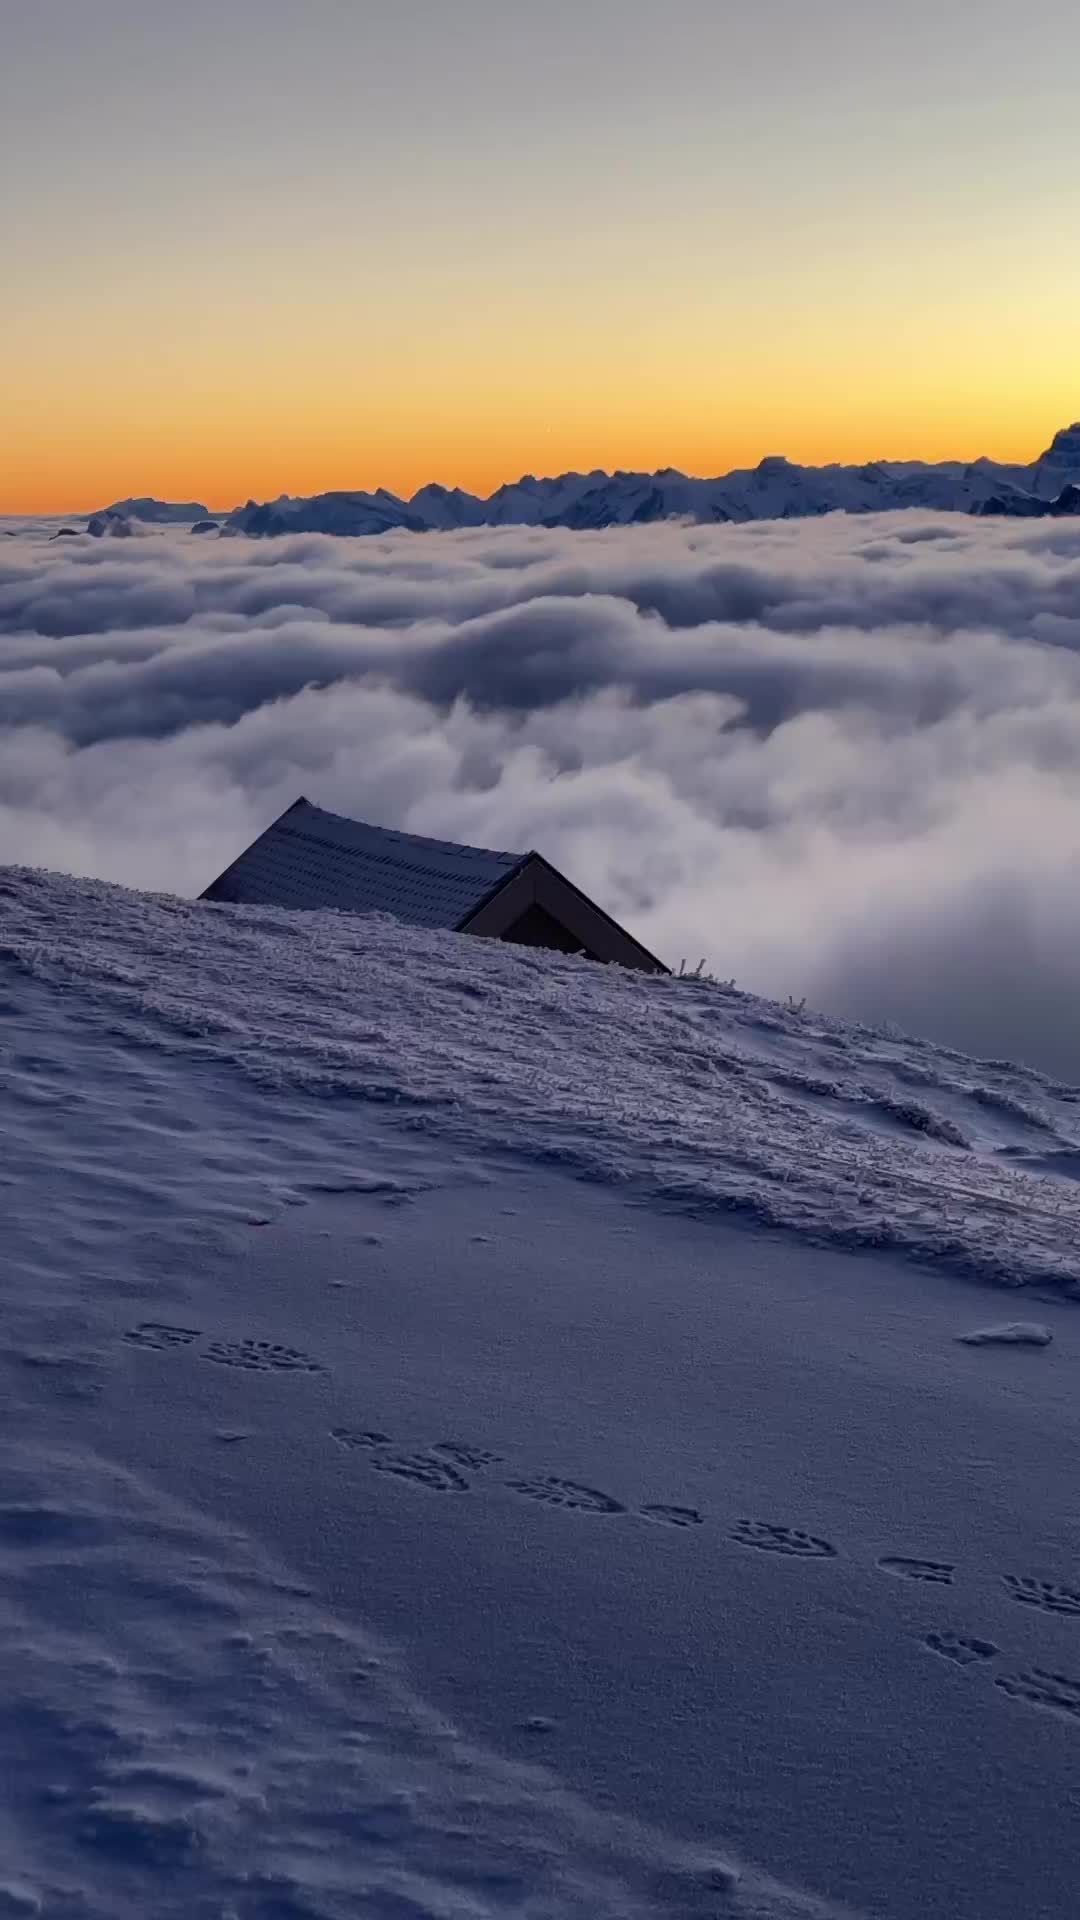 Discover Rigi Kulm: Switzerland's Scenic Winter Wonderland